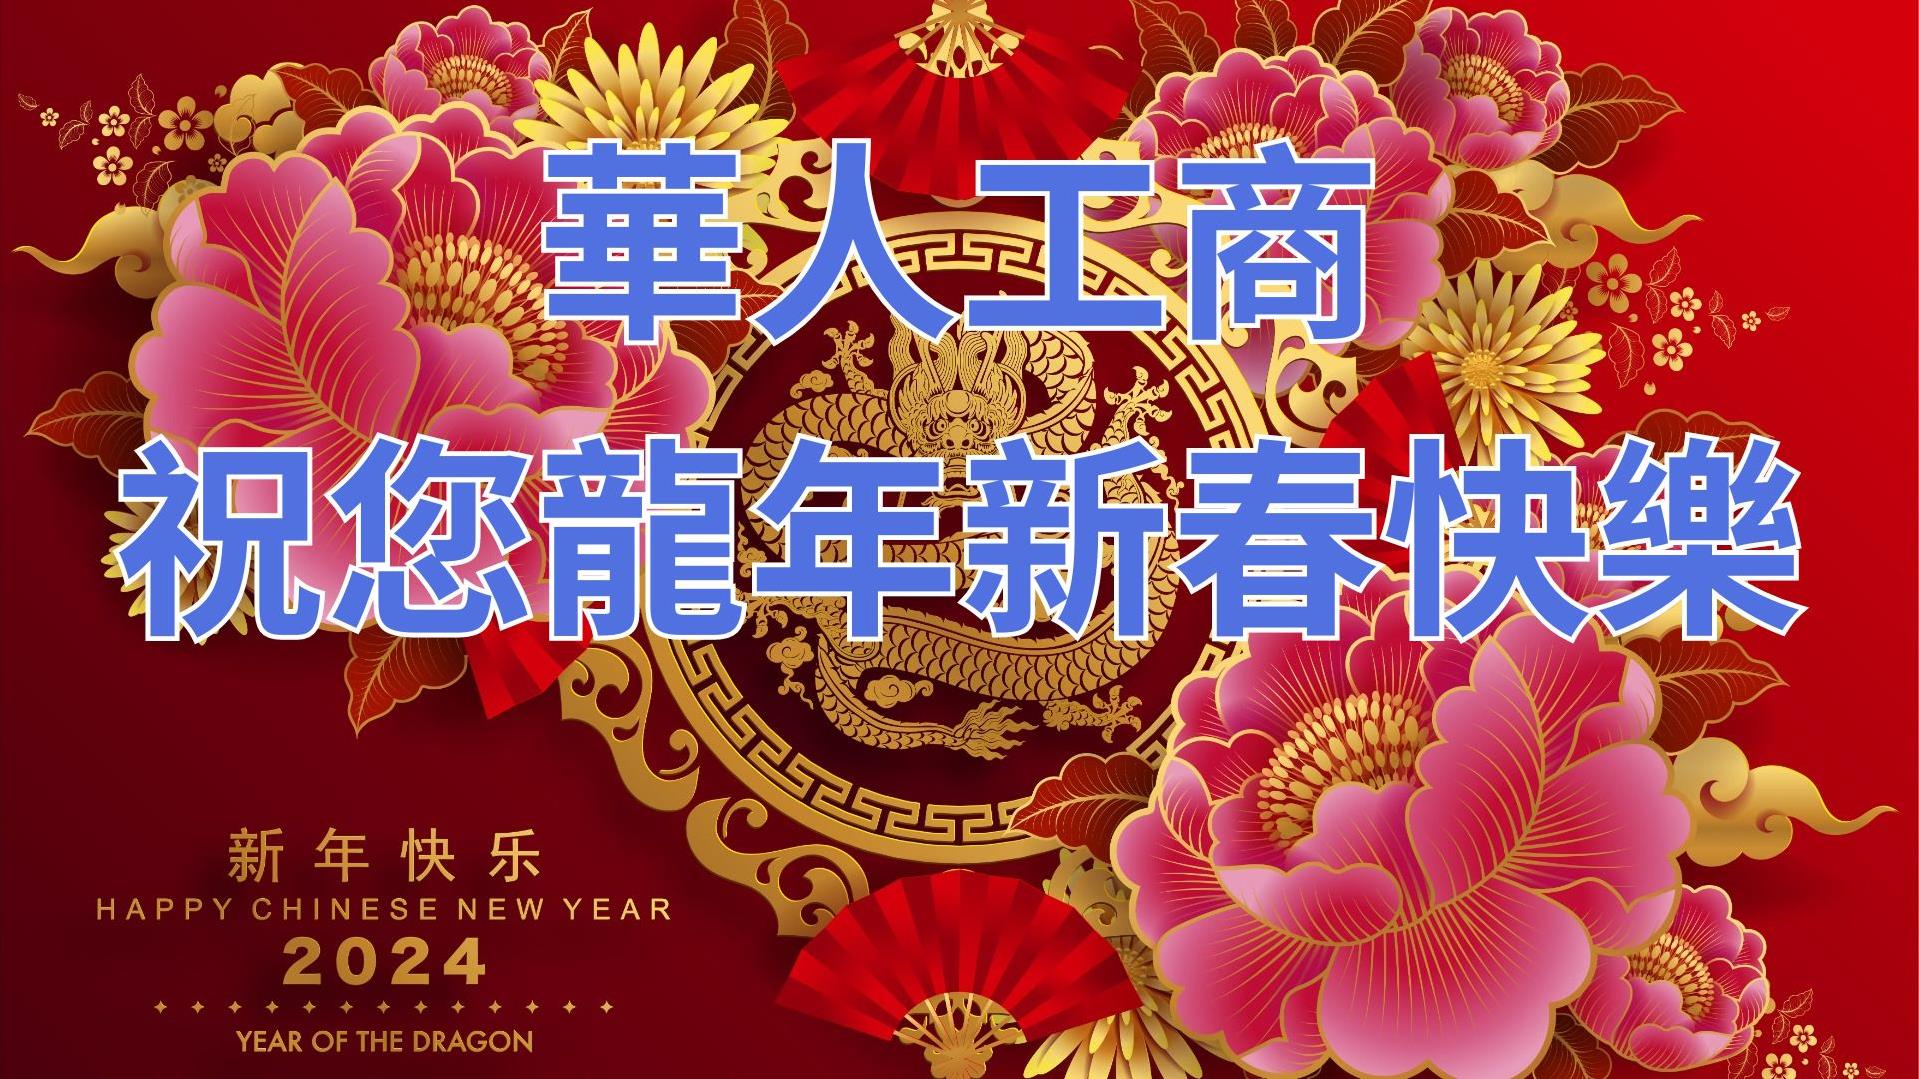 華人工商祝您龍年新春快樂